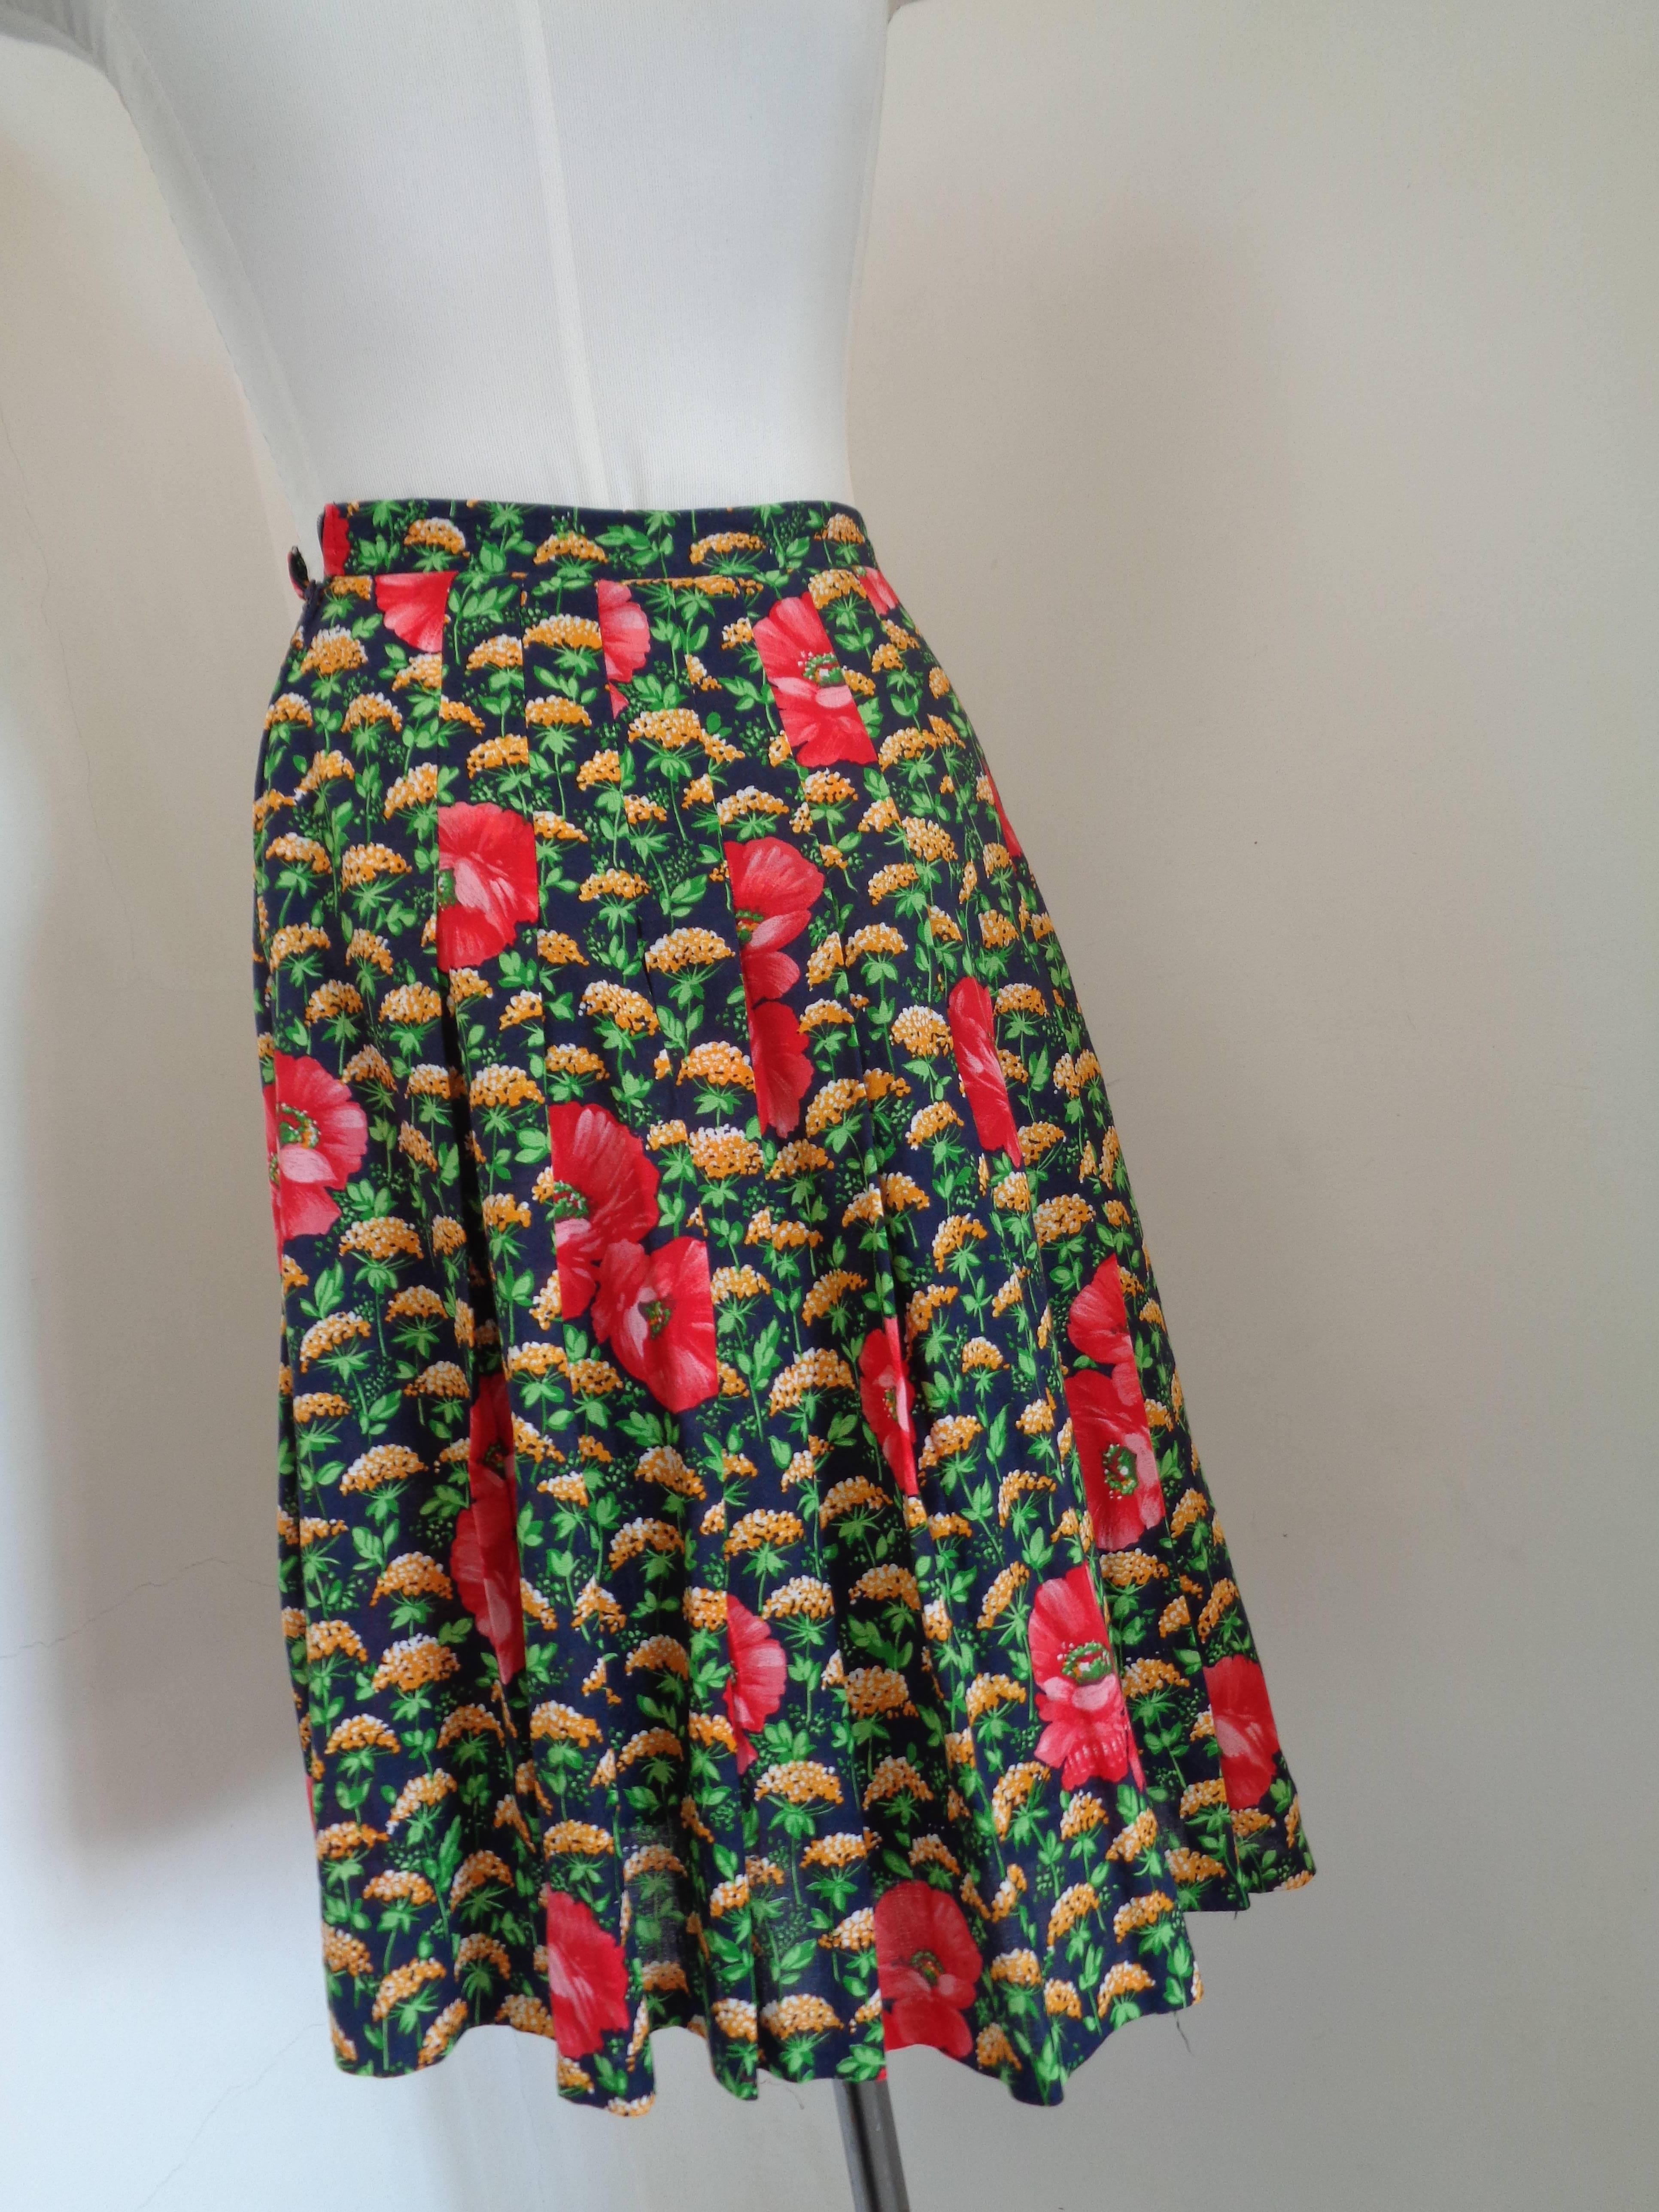 skirt made of flowers